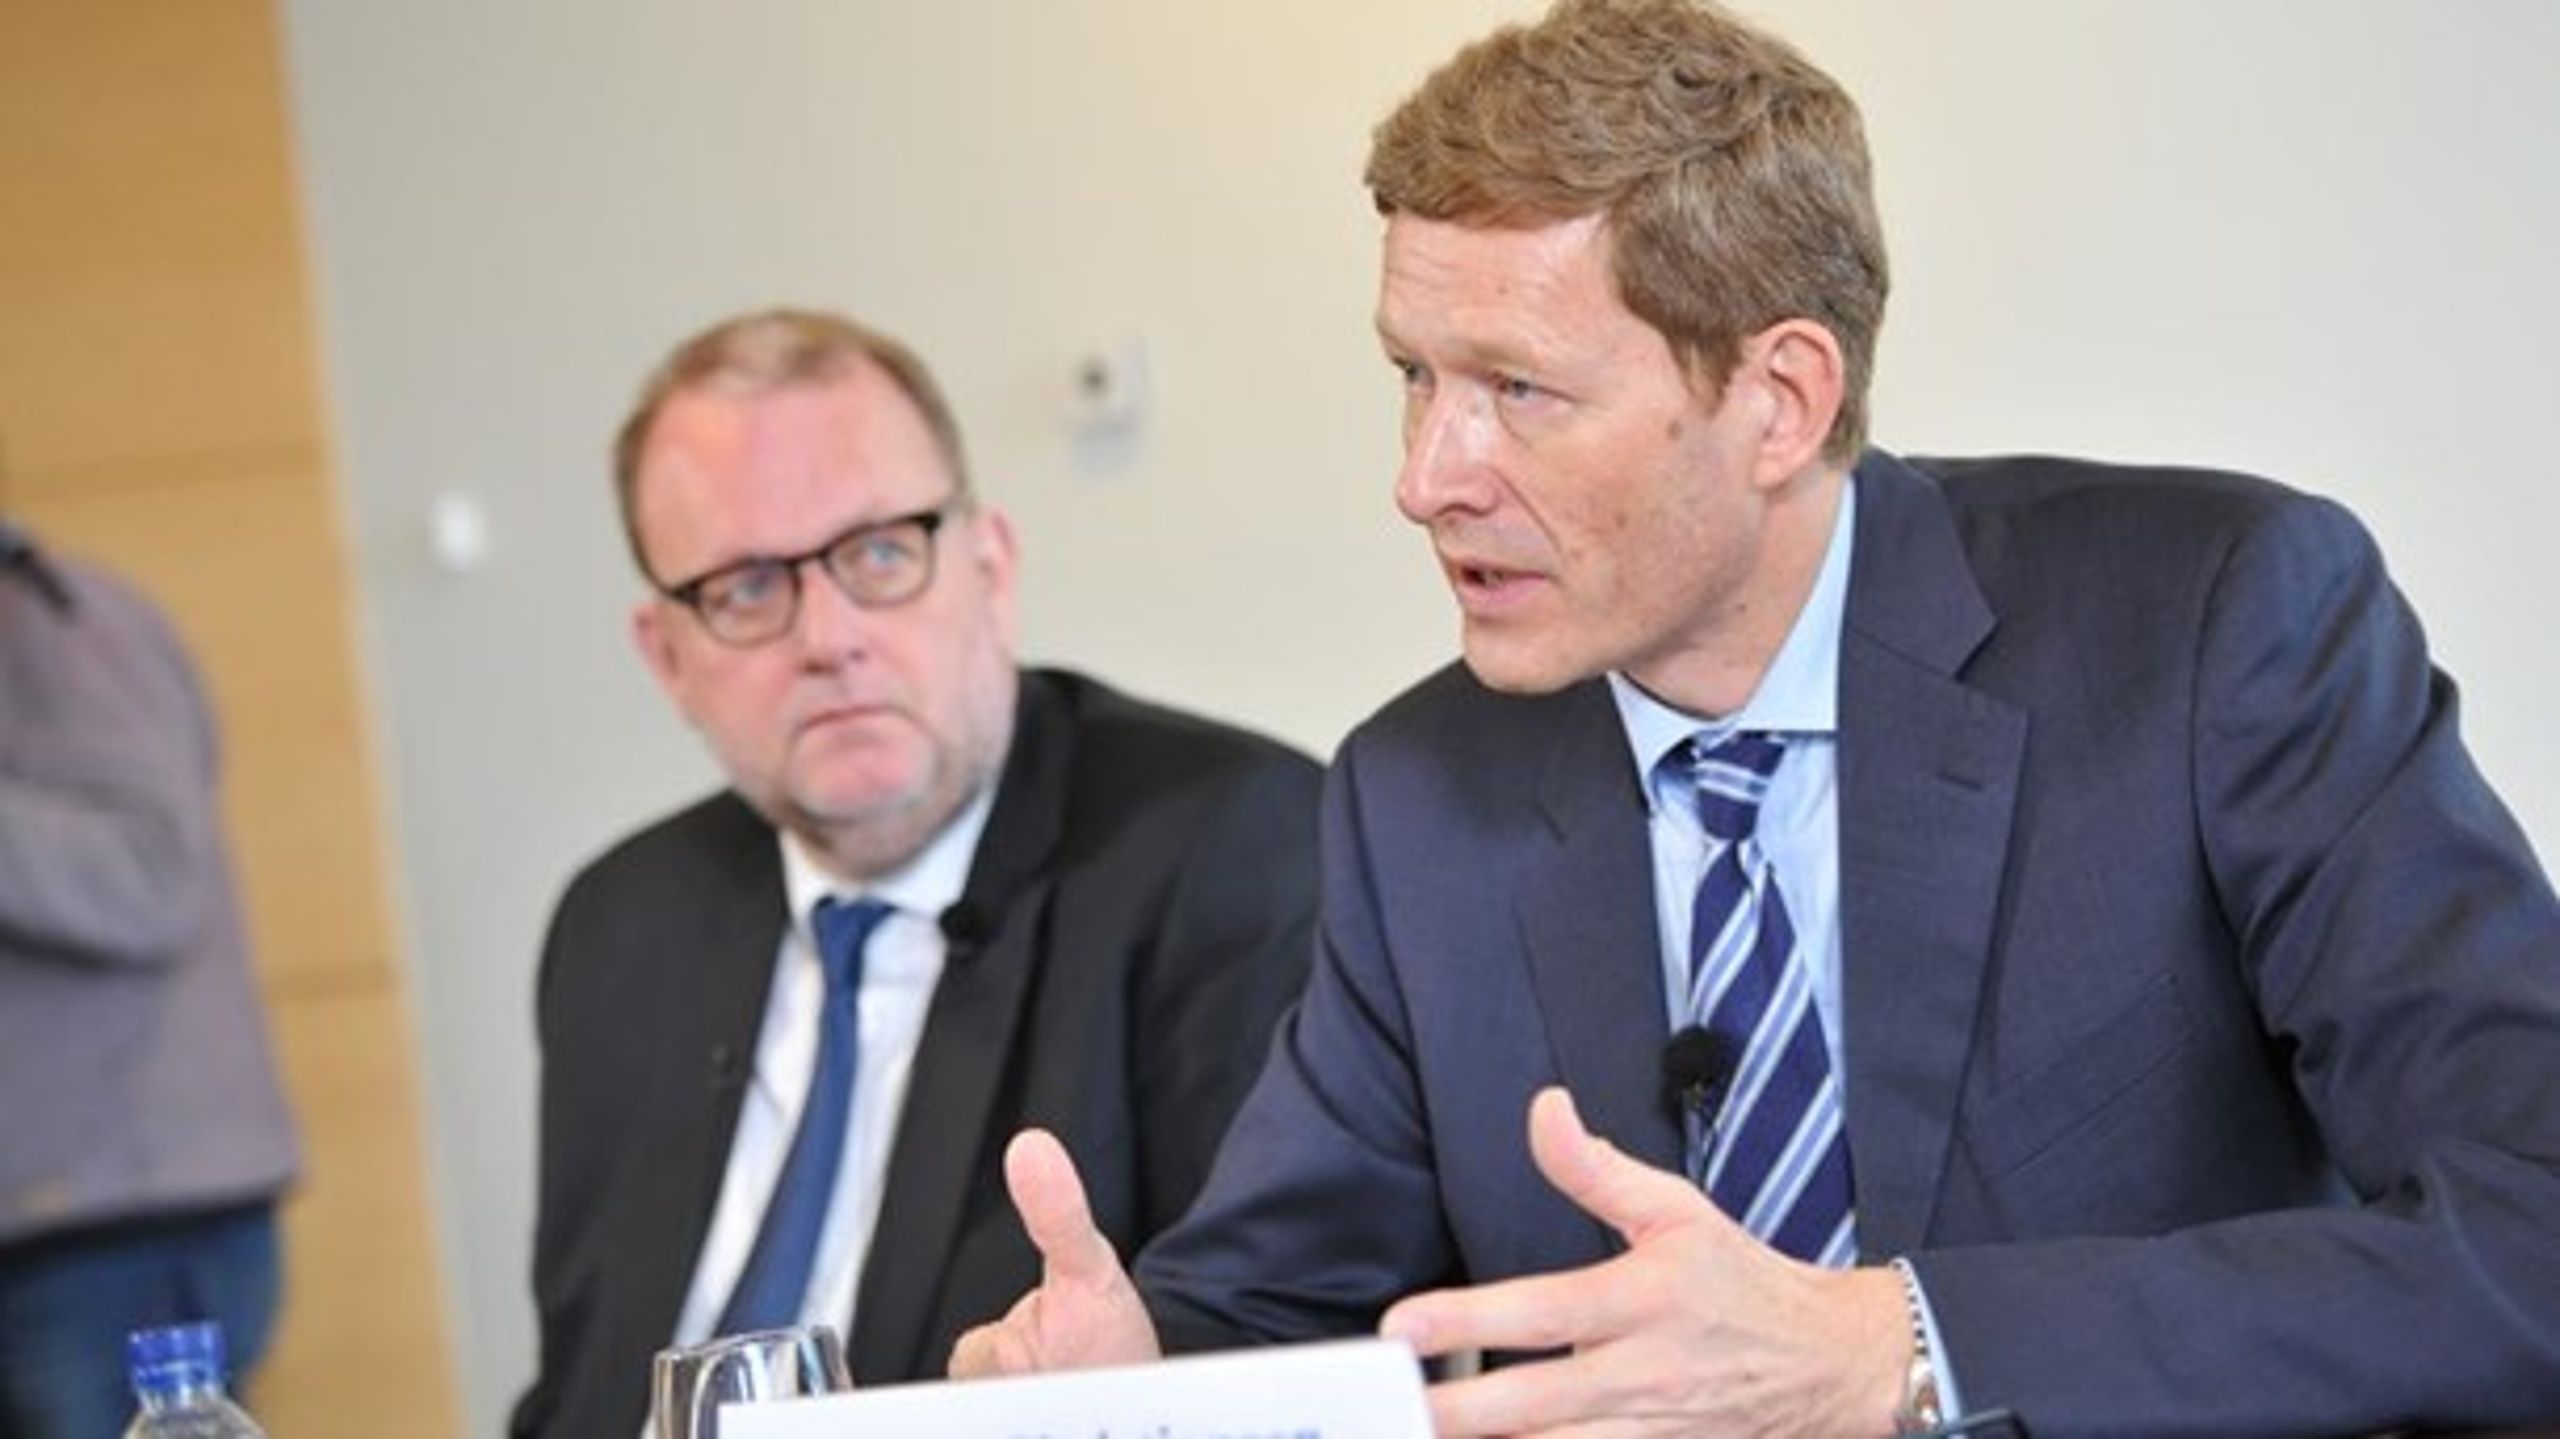 Energiminister Lars Chr. Lilleholt (V) og administrerende direktør for Danfoss Niels B. Christiansen da de&nbsp;præsenterede Energikommissionen i marts 2016.